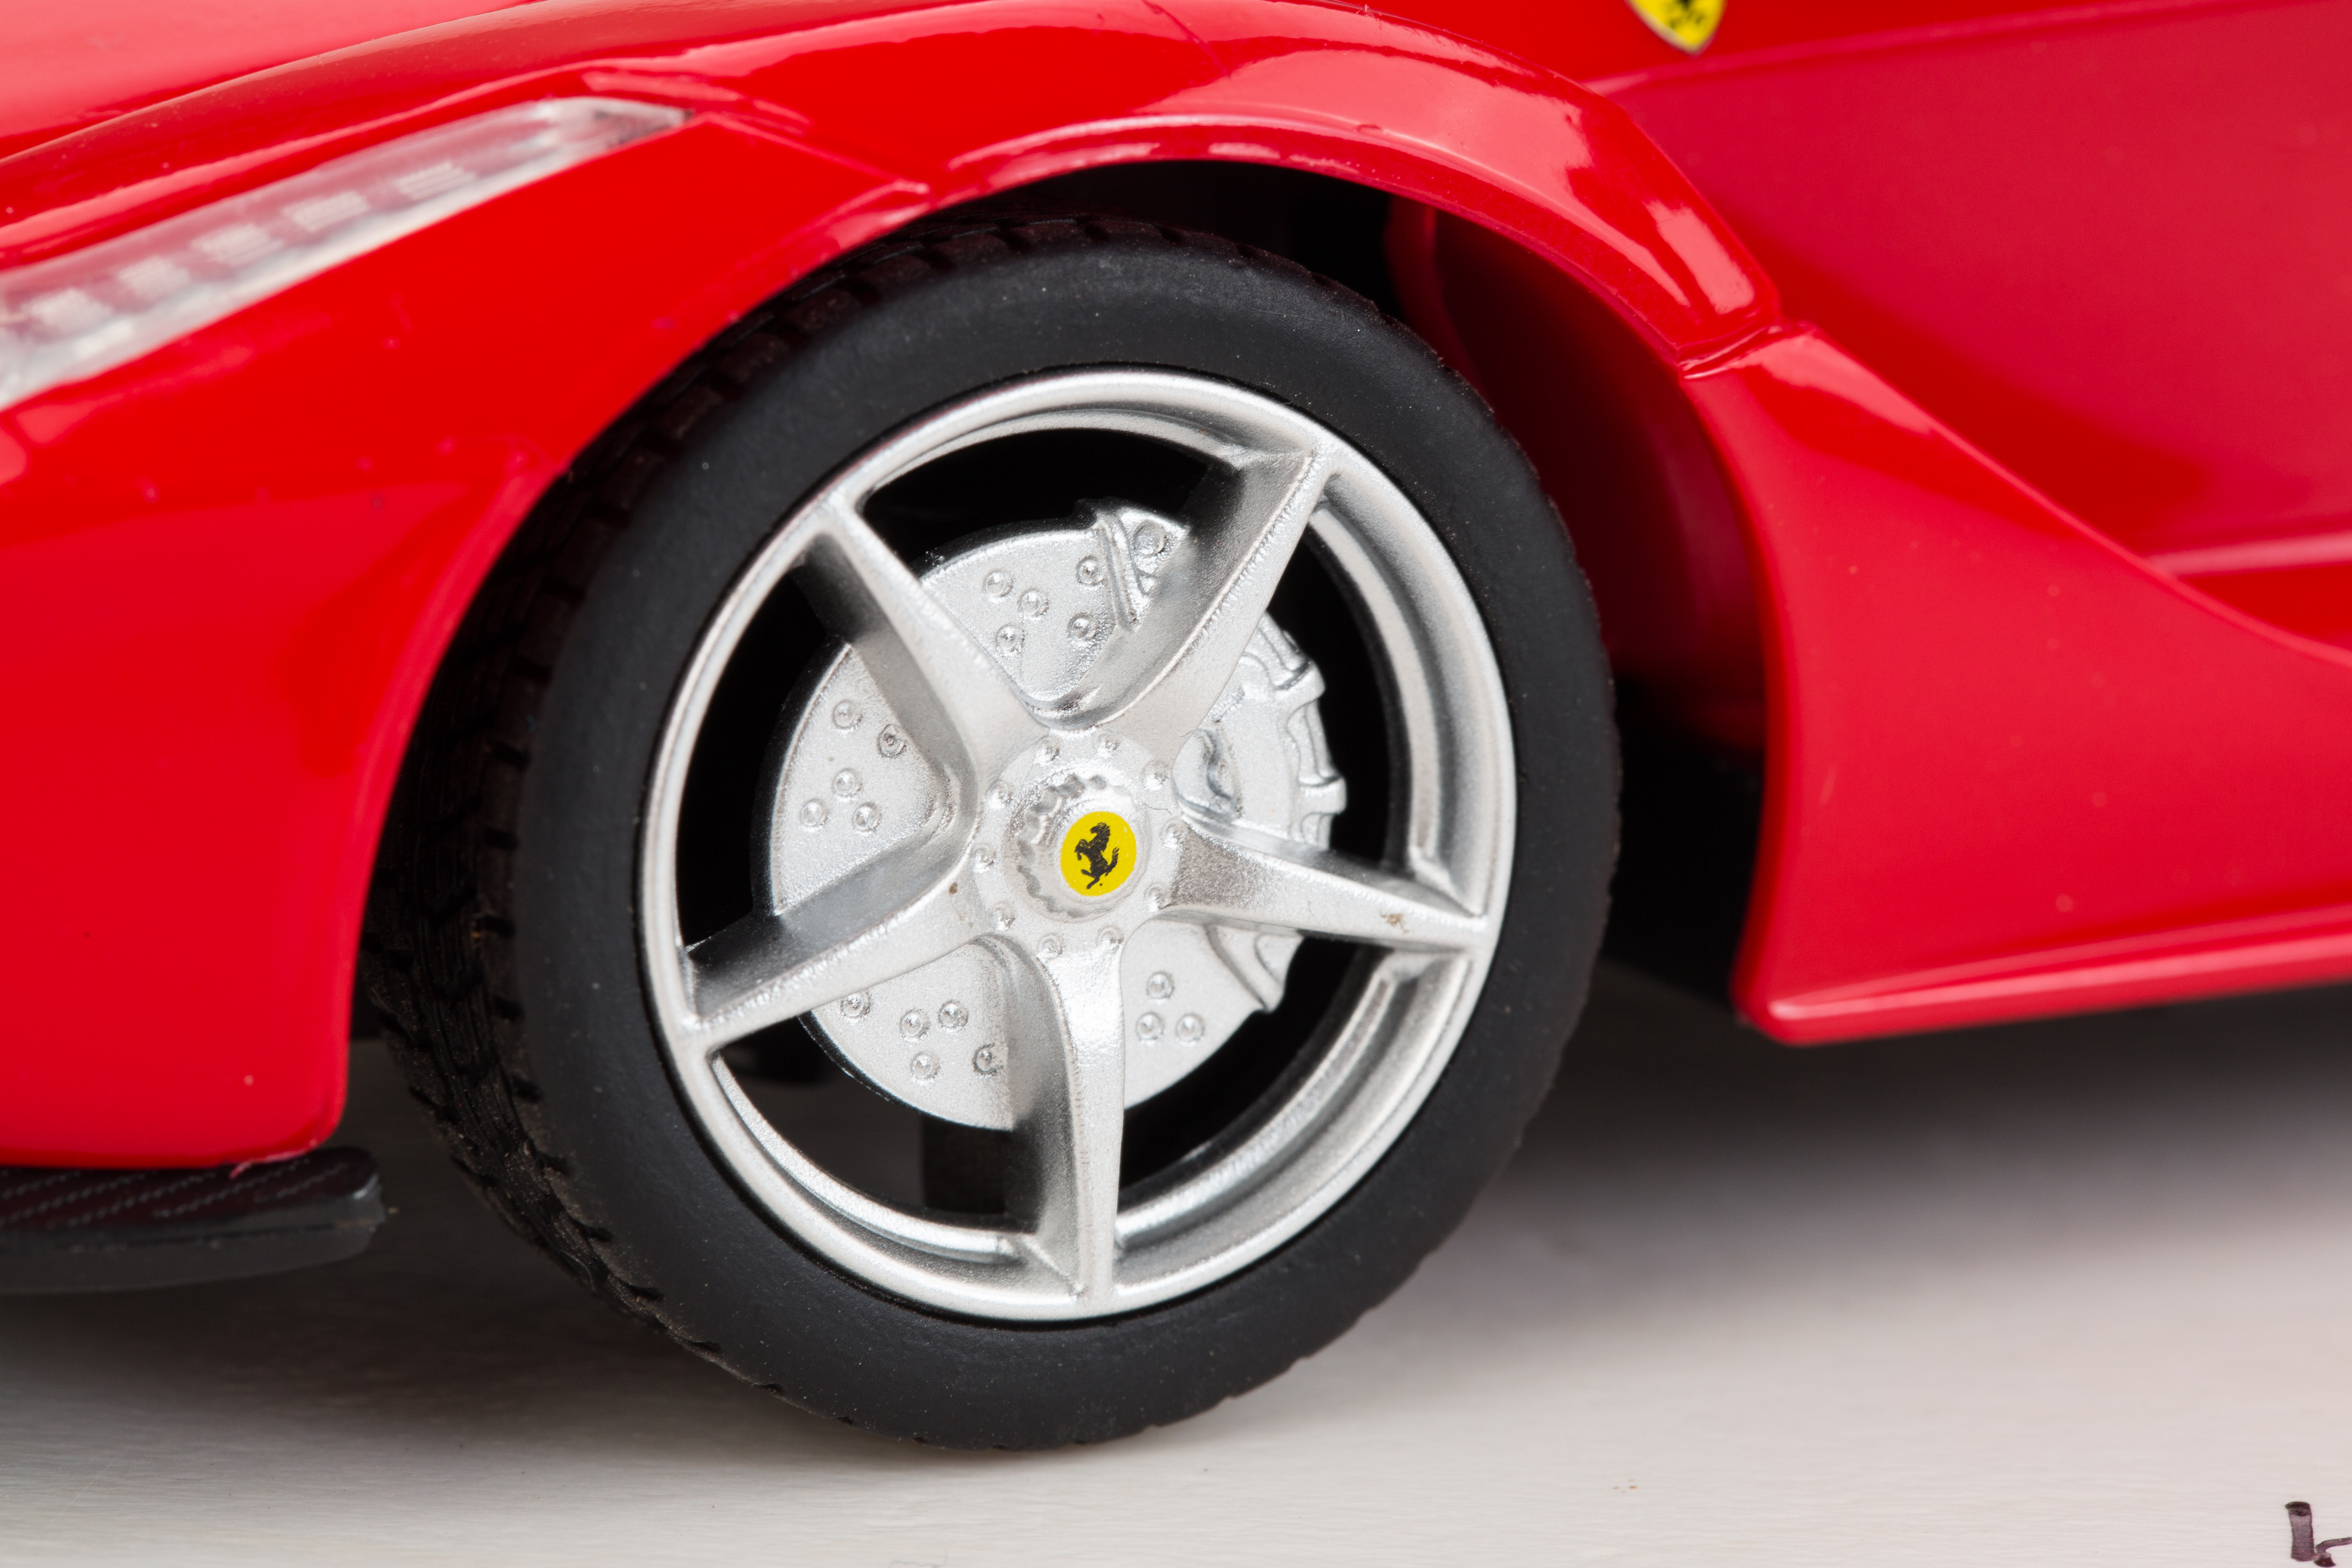 TURBO CHALLENGE Voiture télécommandée Turbo Challenge Ferrari FXX K Evo pas  cher 